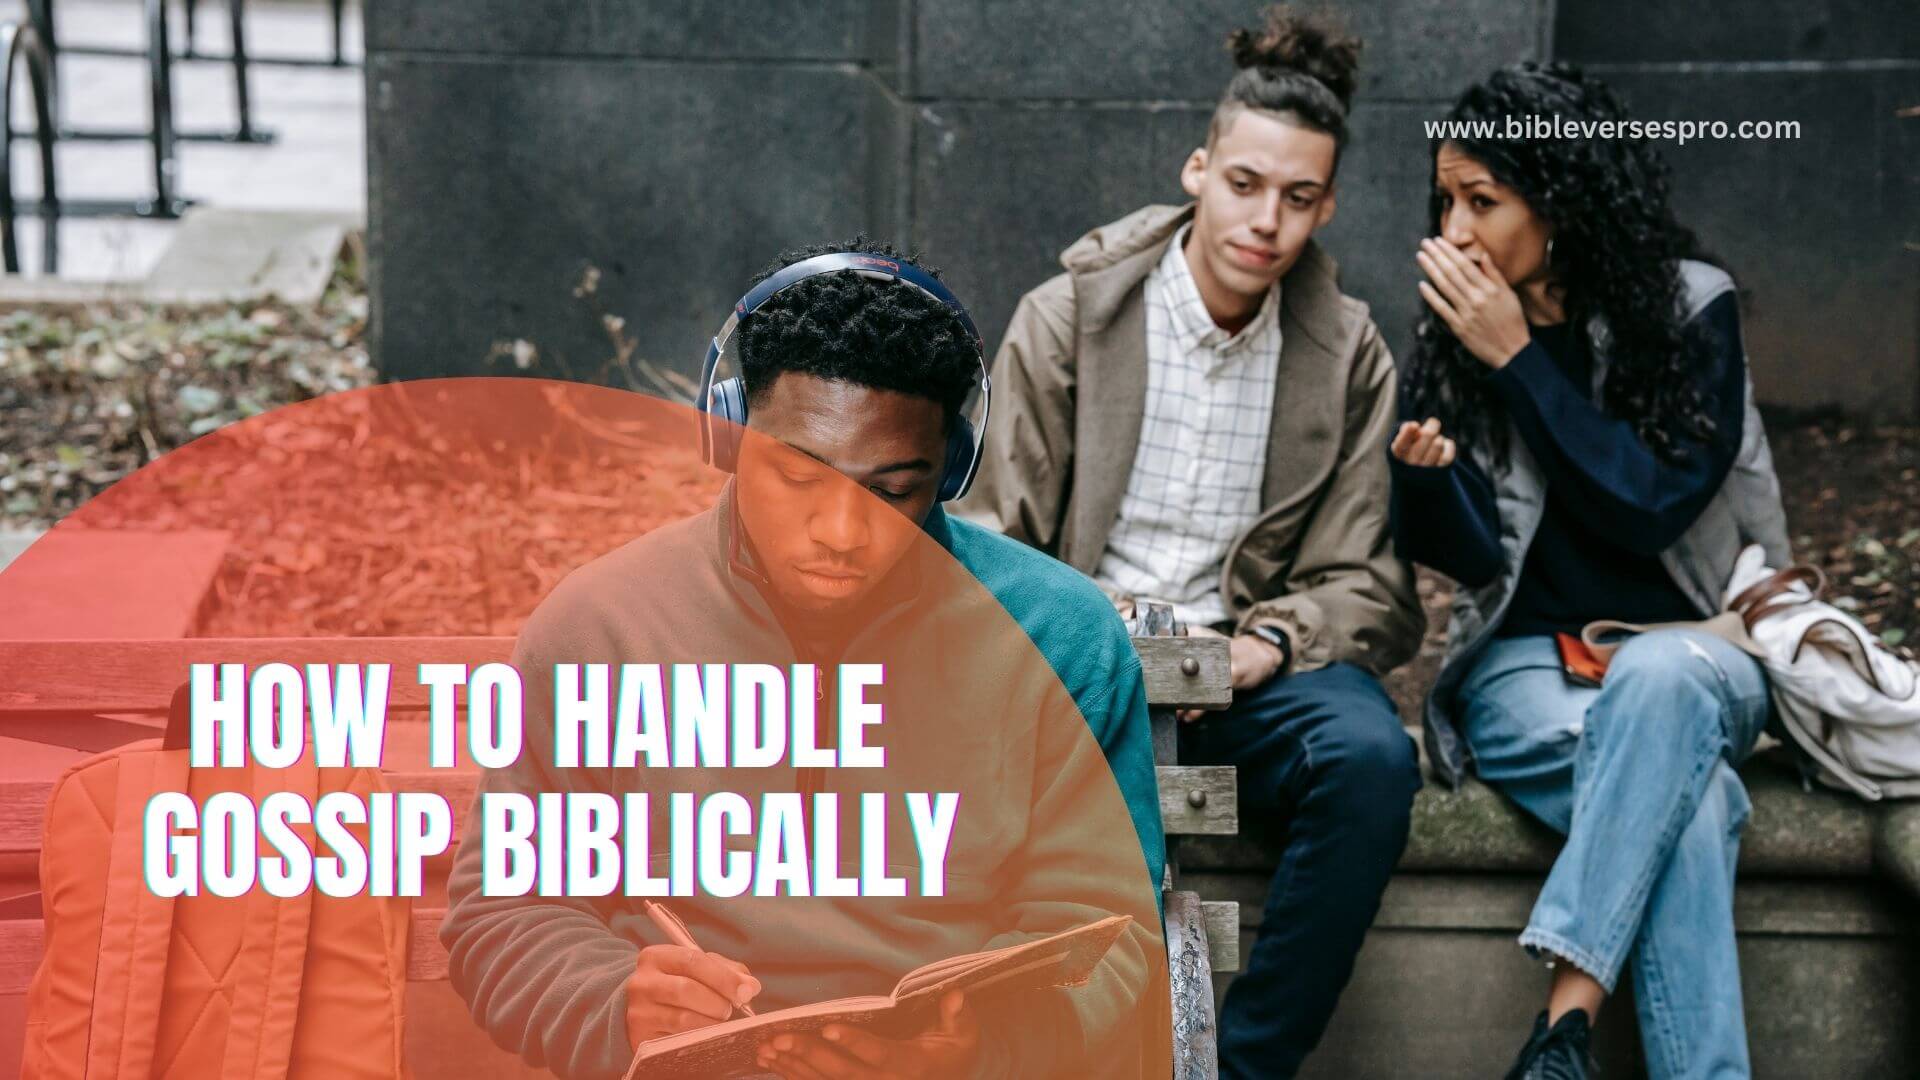 HOW TO HANDLE GOSSIP BIBLICALLY (1)